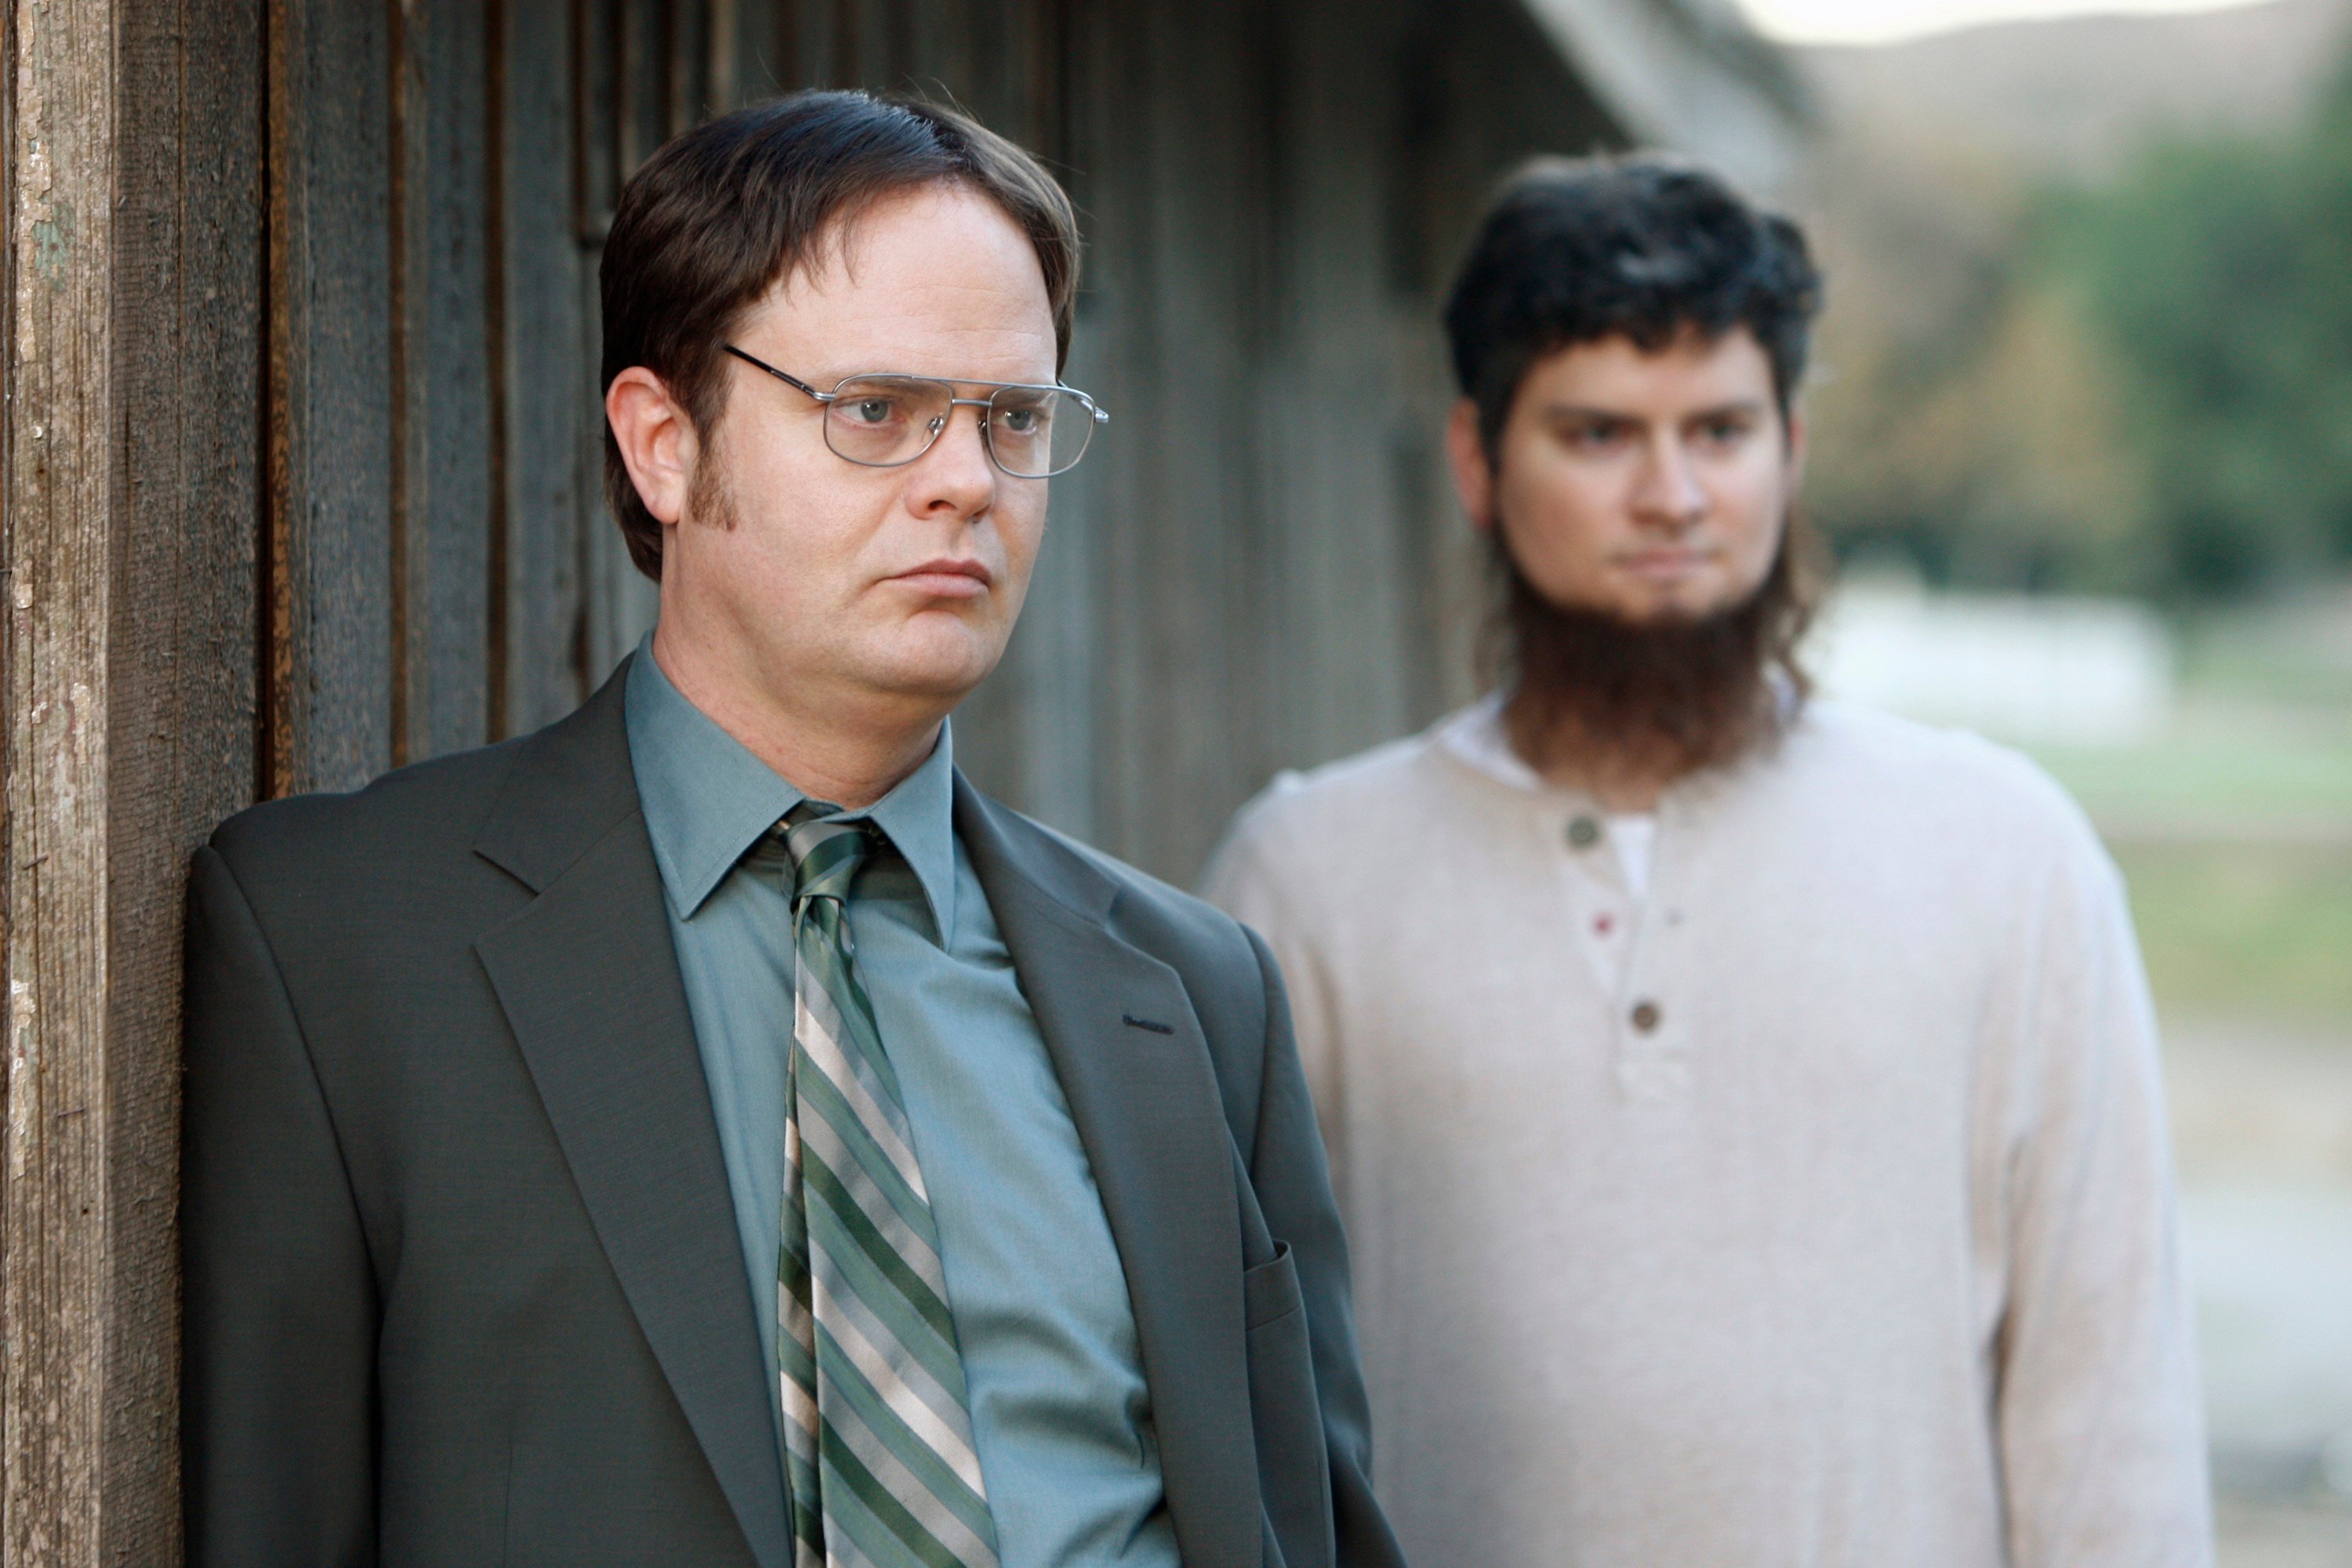 'The Office' Rainn Wilson as Dwight Schrute, Michael Schur as Mose